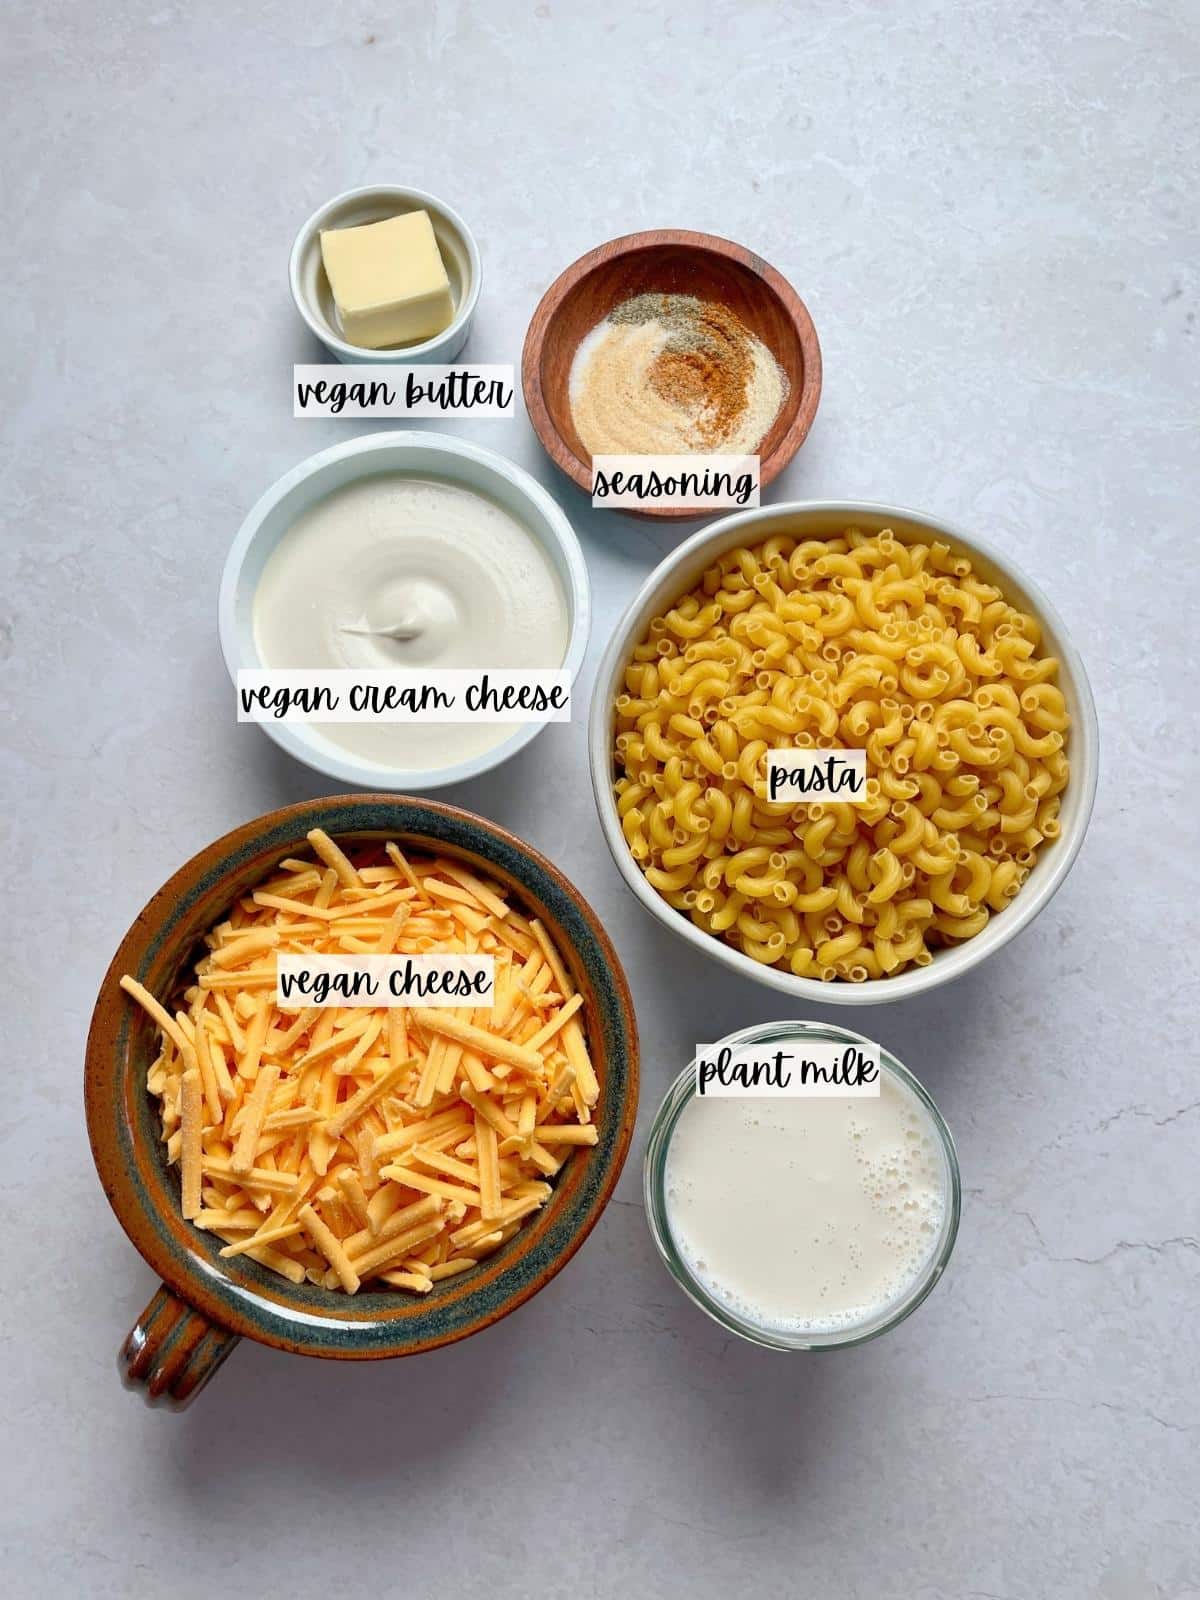 Labeled ingredients for vegan macaroni.